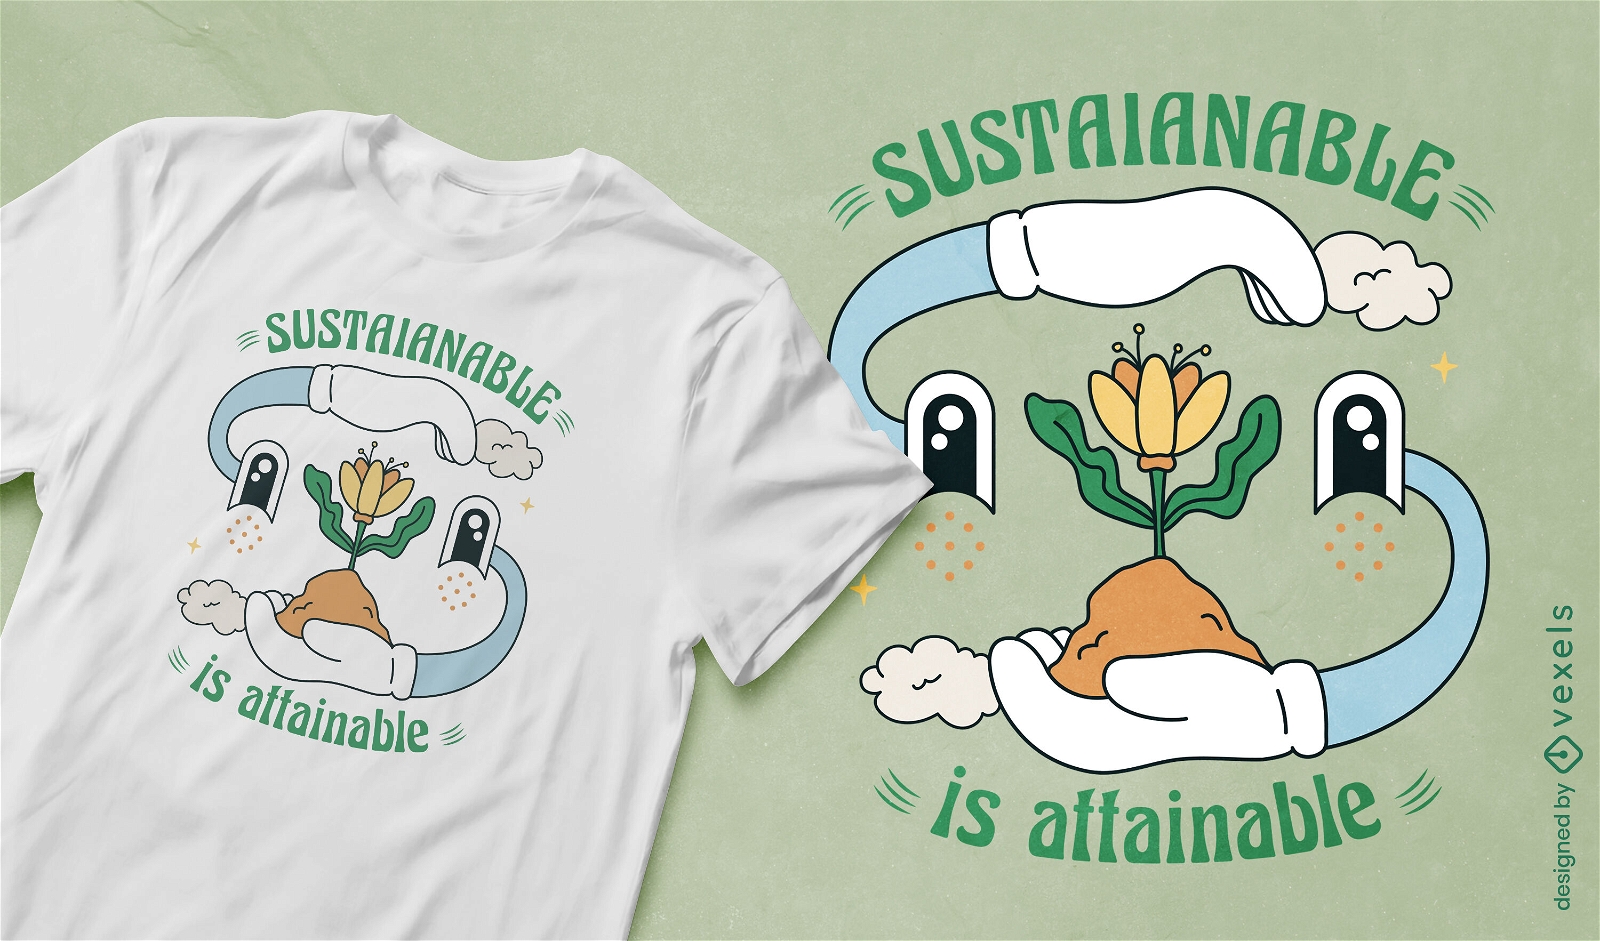 Dise?o de camiseta sostenible es alcanzable.